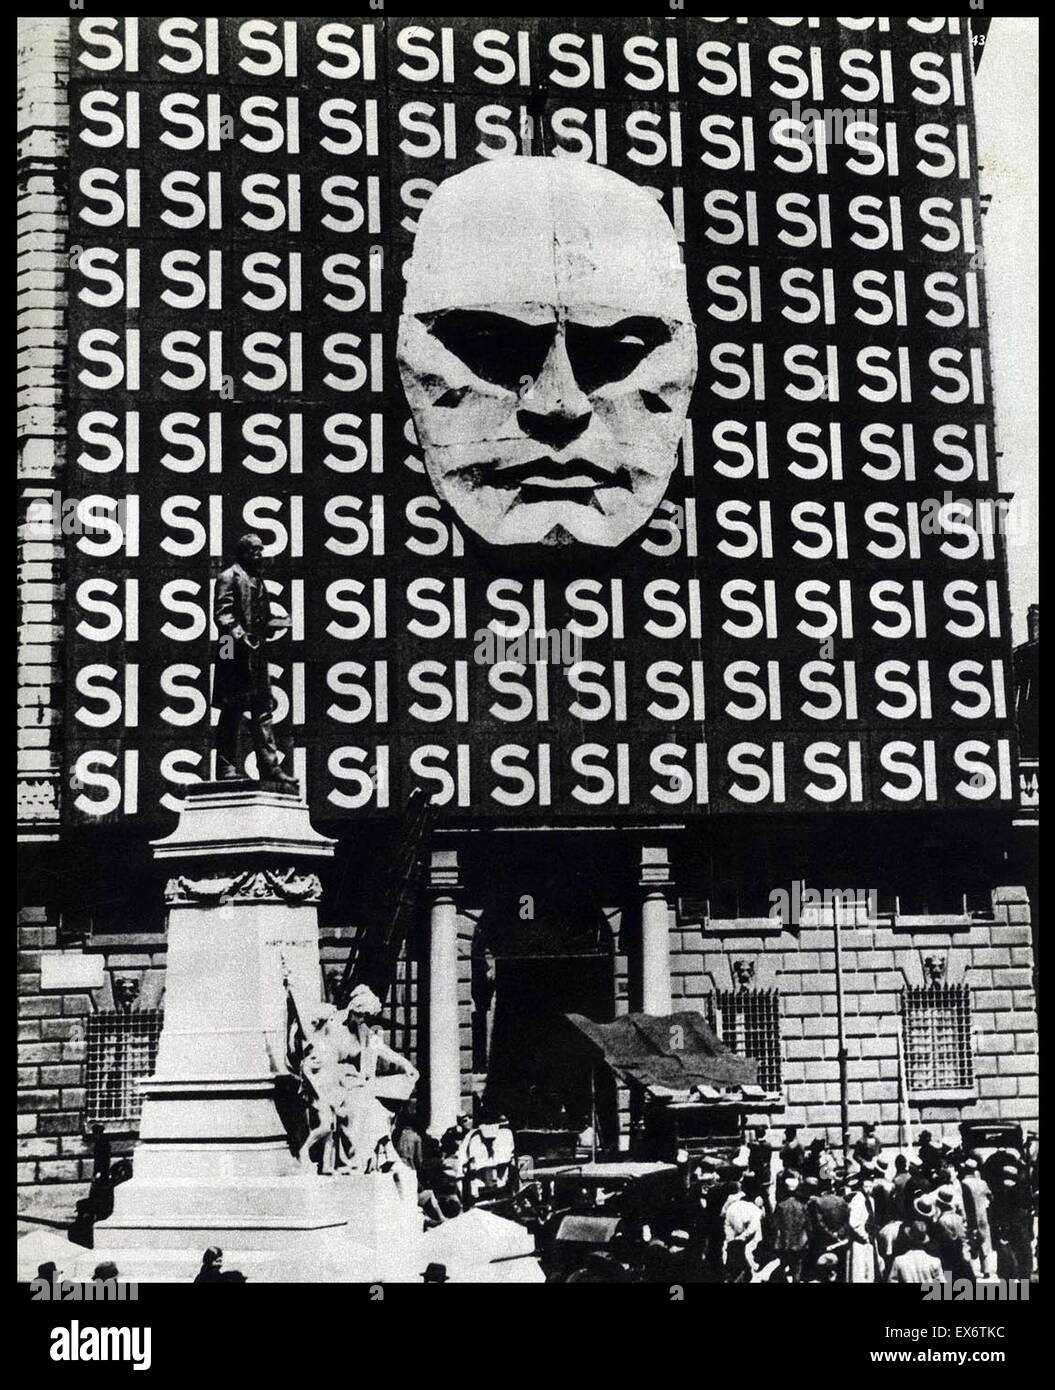 flise eftertænksom Mursten Mussolini poster hi-res stock photography and images - Alamy